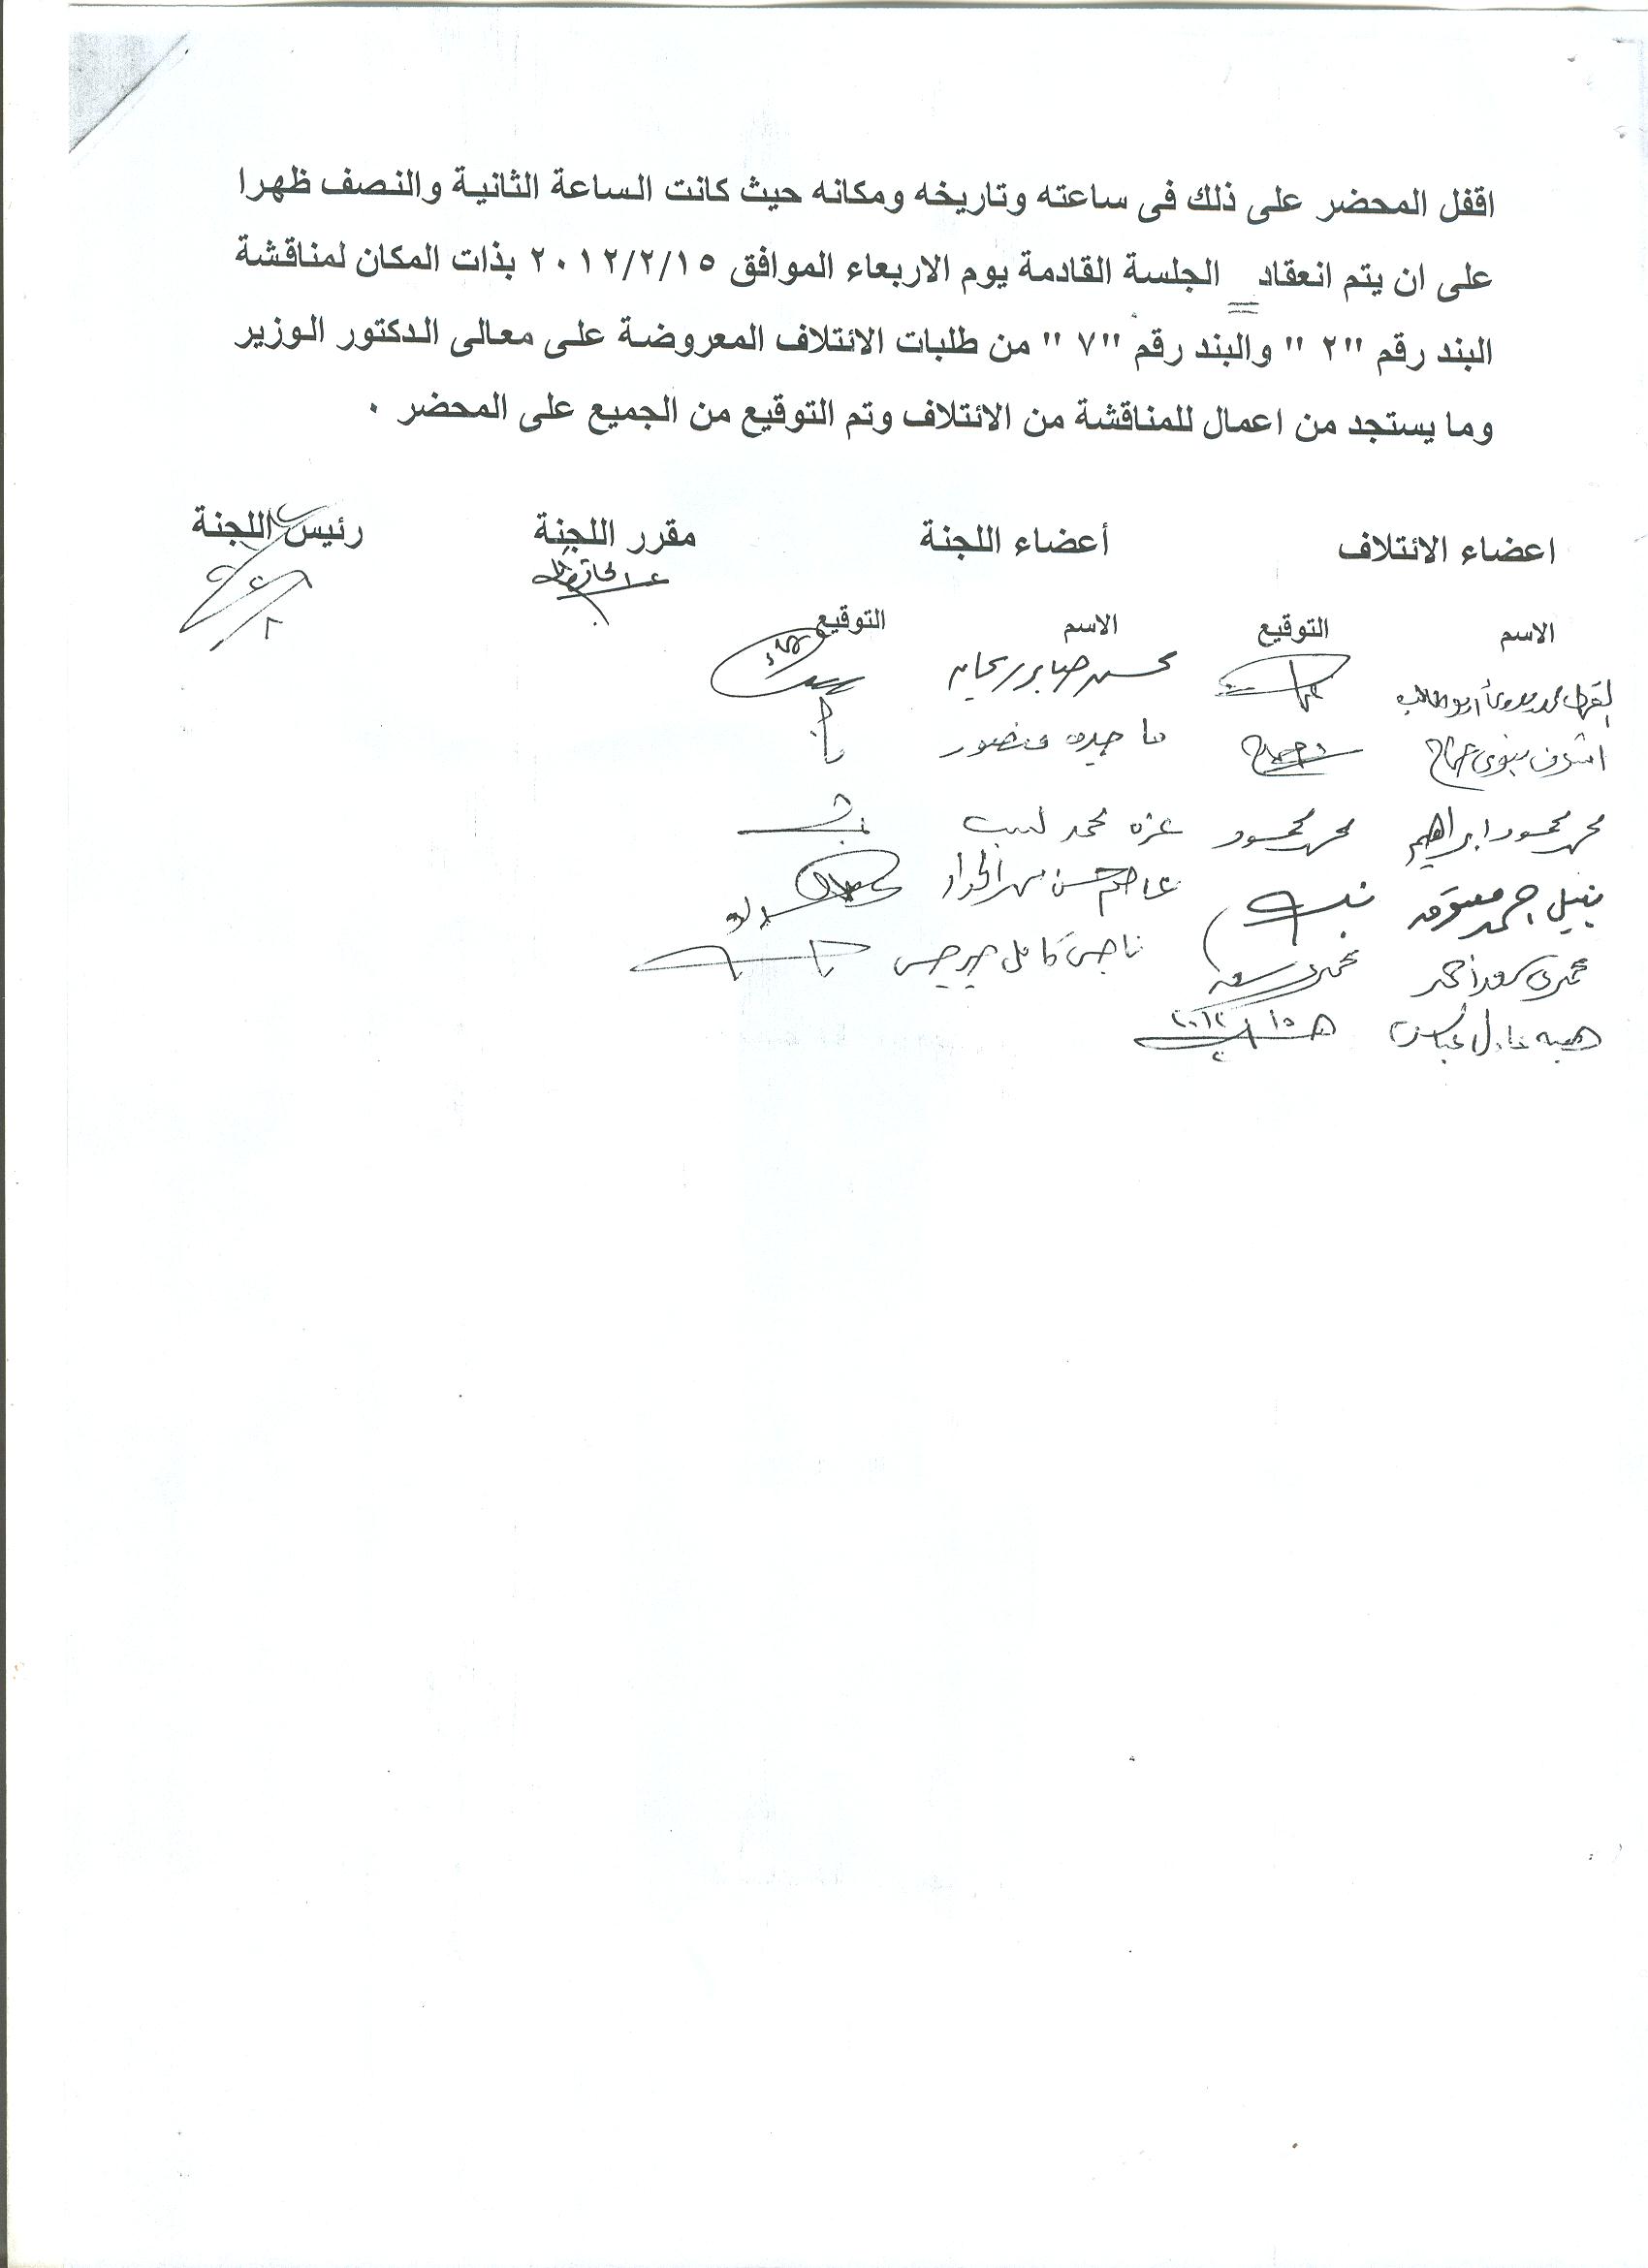 أعمال لجنة الإئتلاف العام للعاملين بتموين مصر بالوزاره خلال شهر فبراير 2012 - صفحة 2 8-310